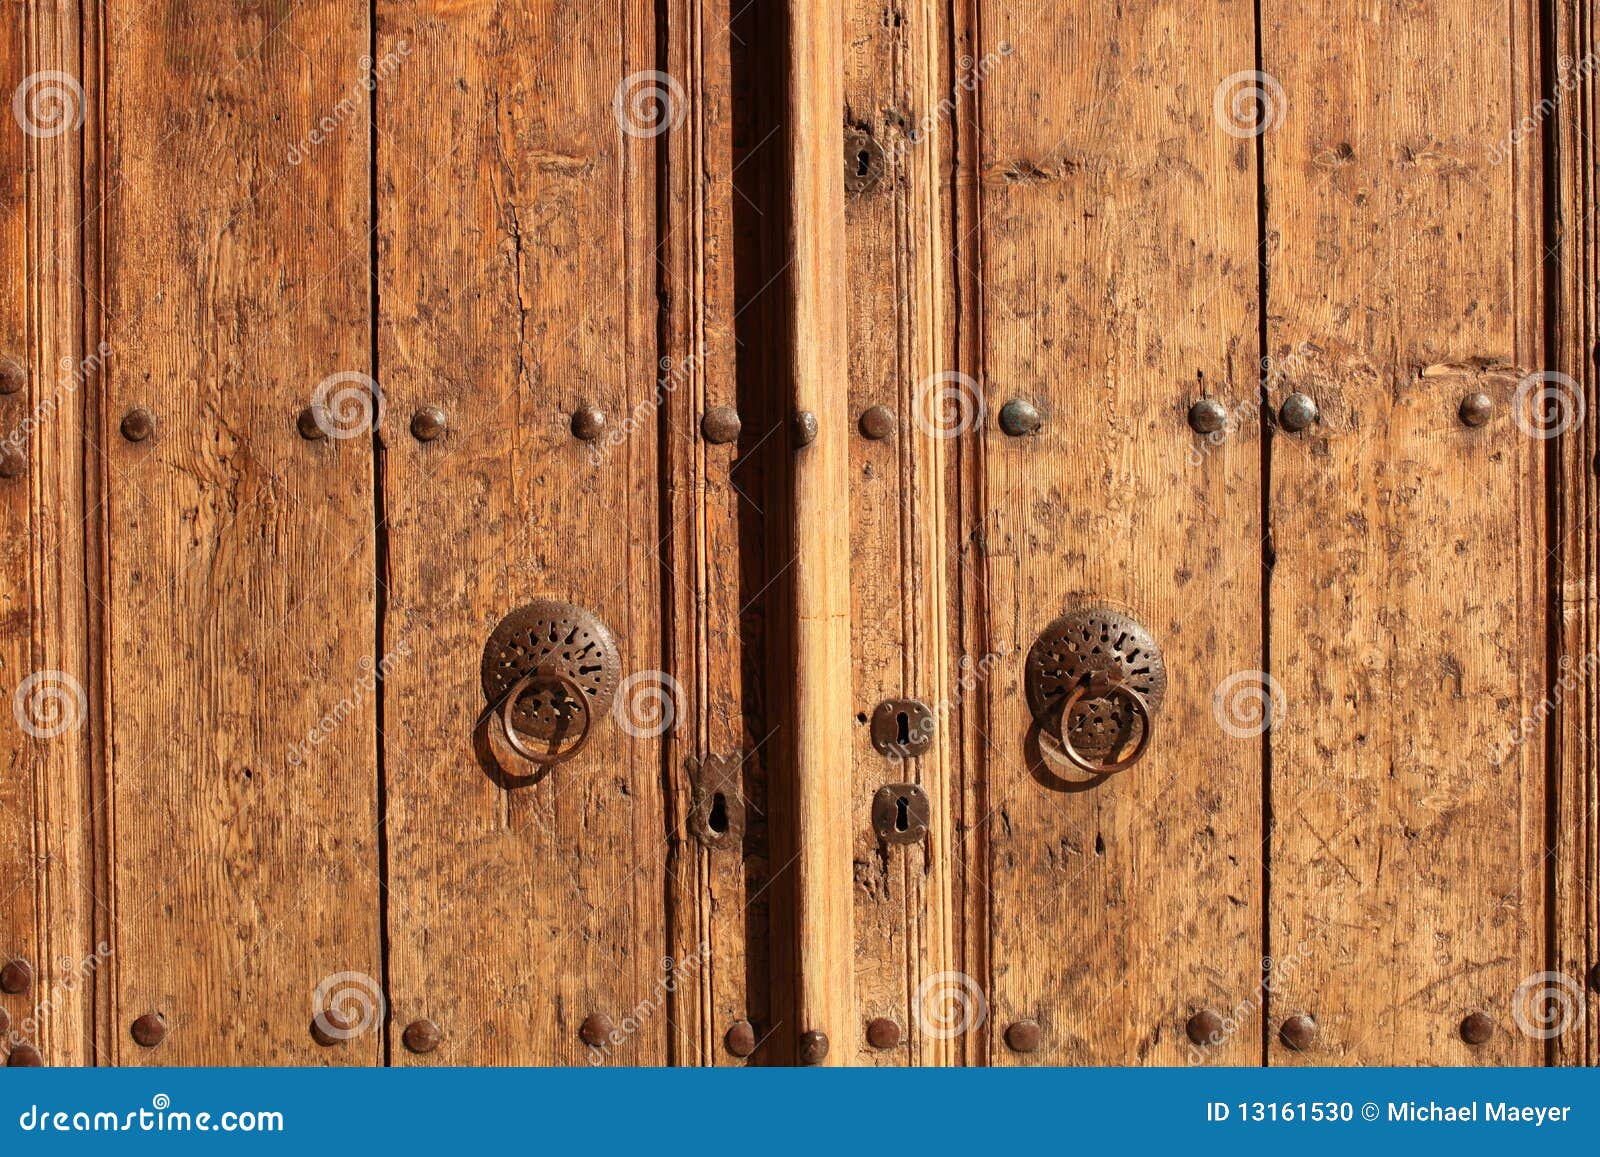 old door with knockers